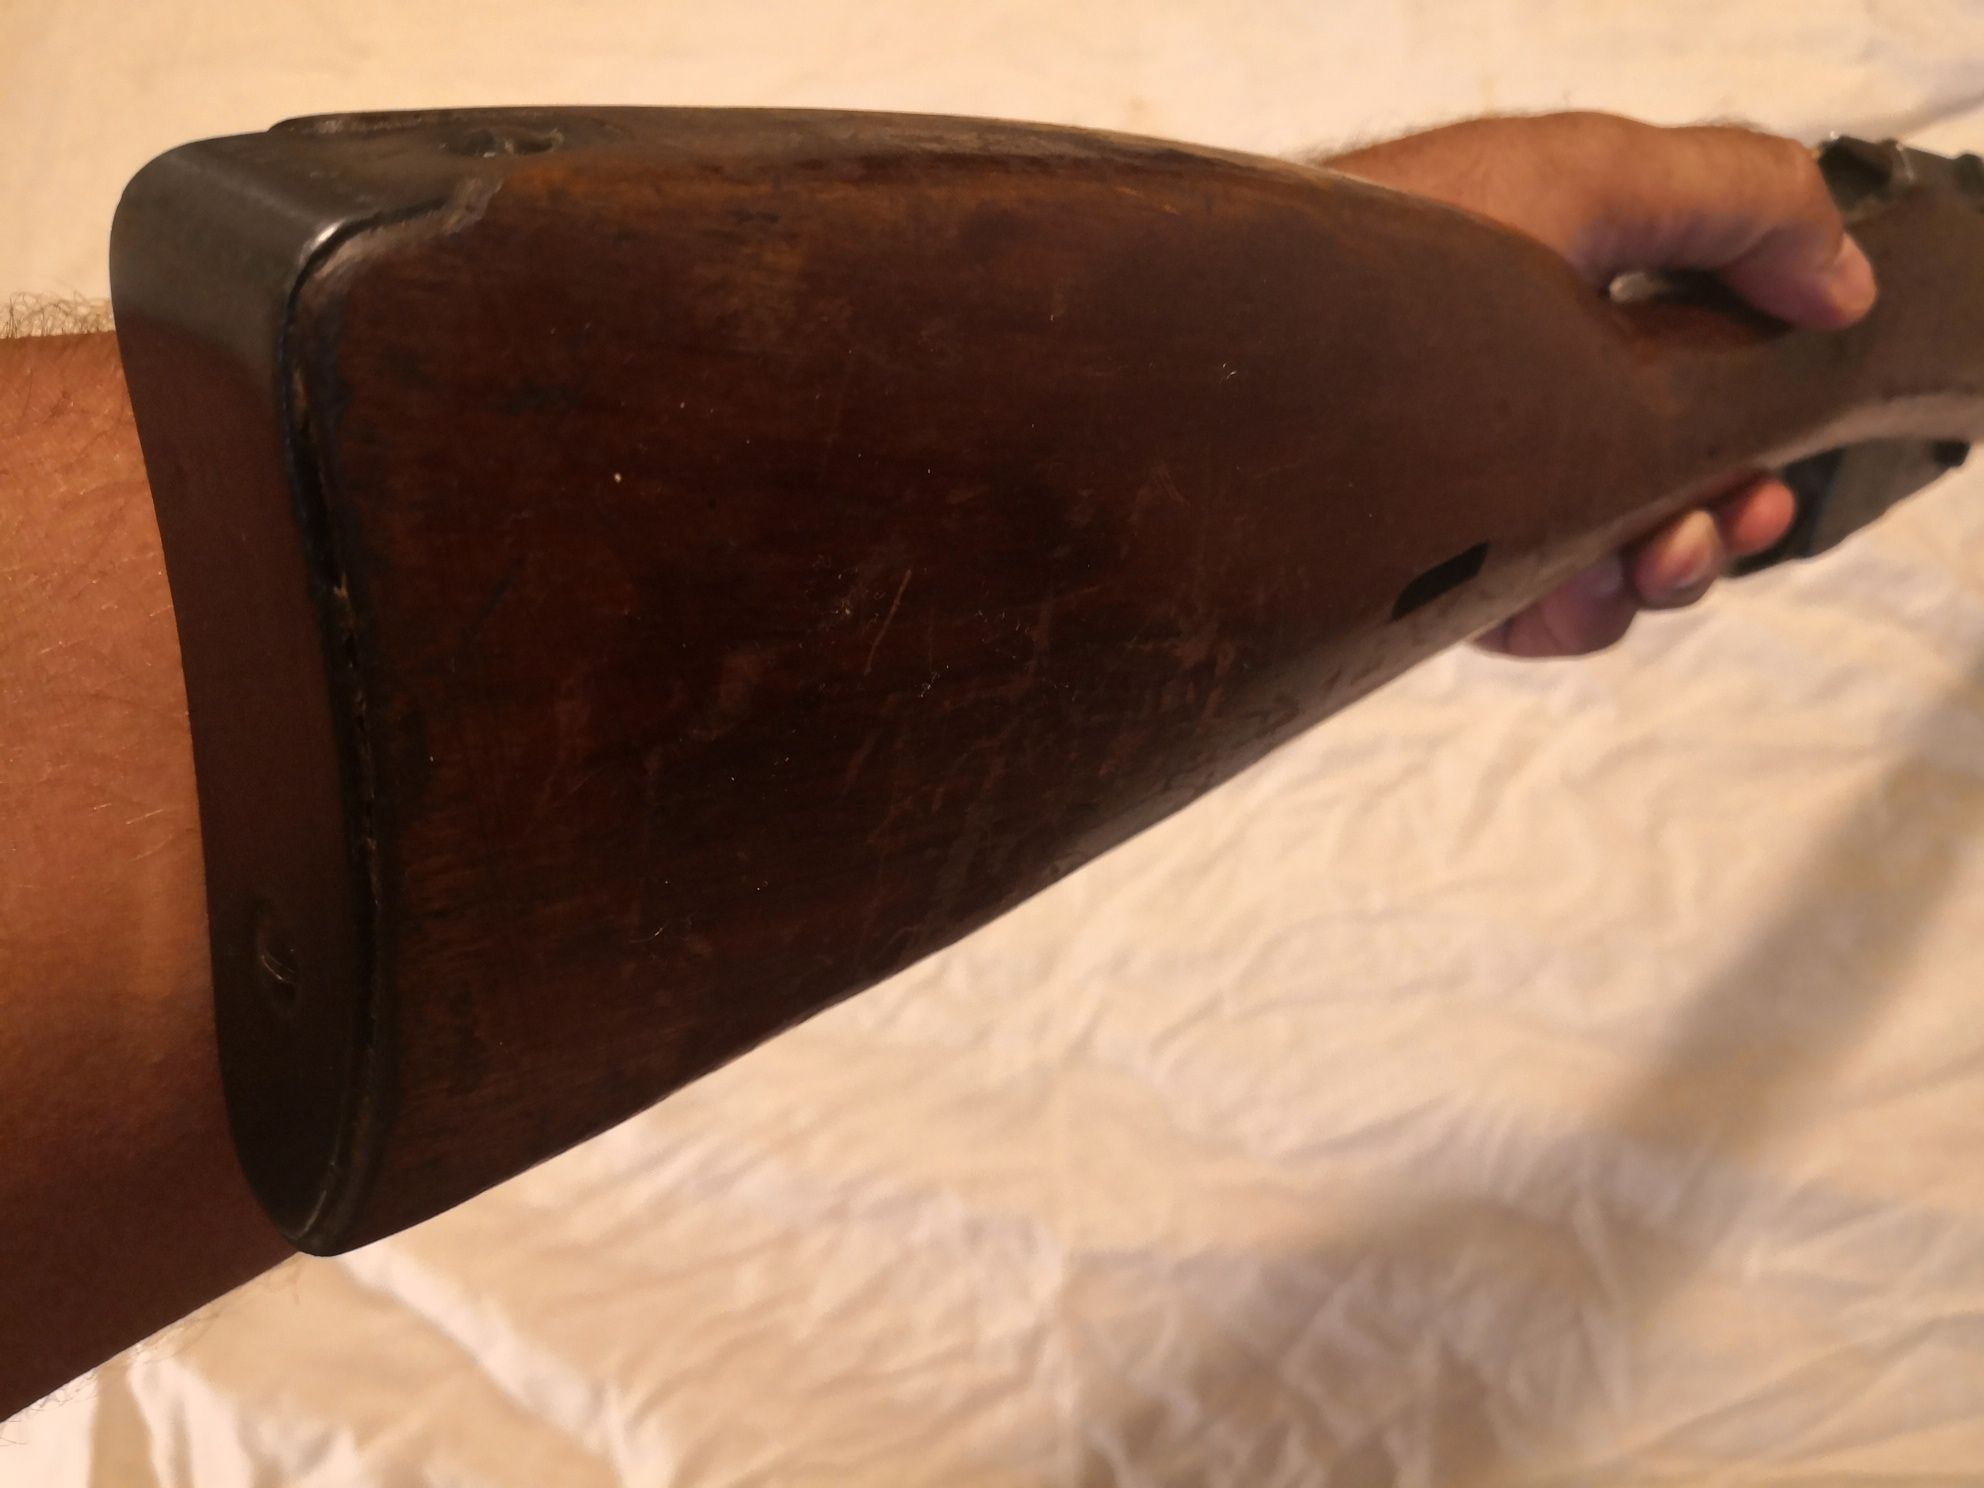 Пушка Мосин Наган. Карабина обезопасена образец 1945 г.